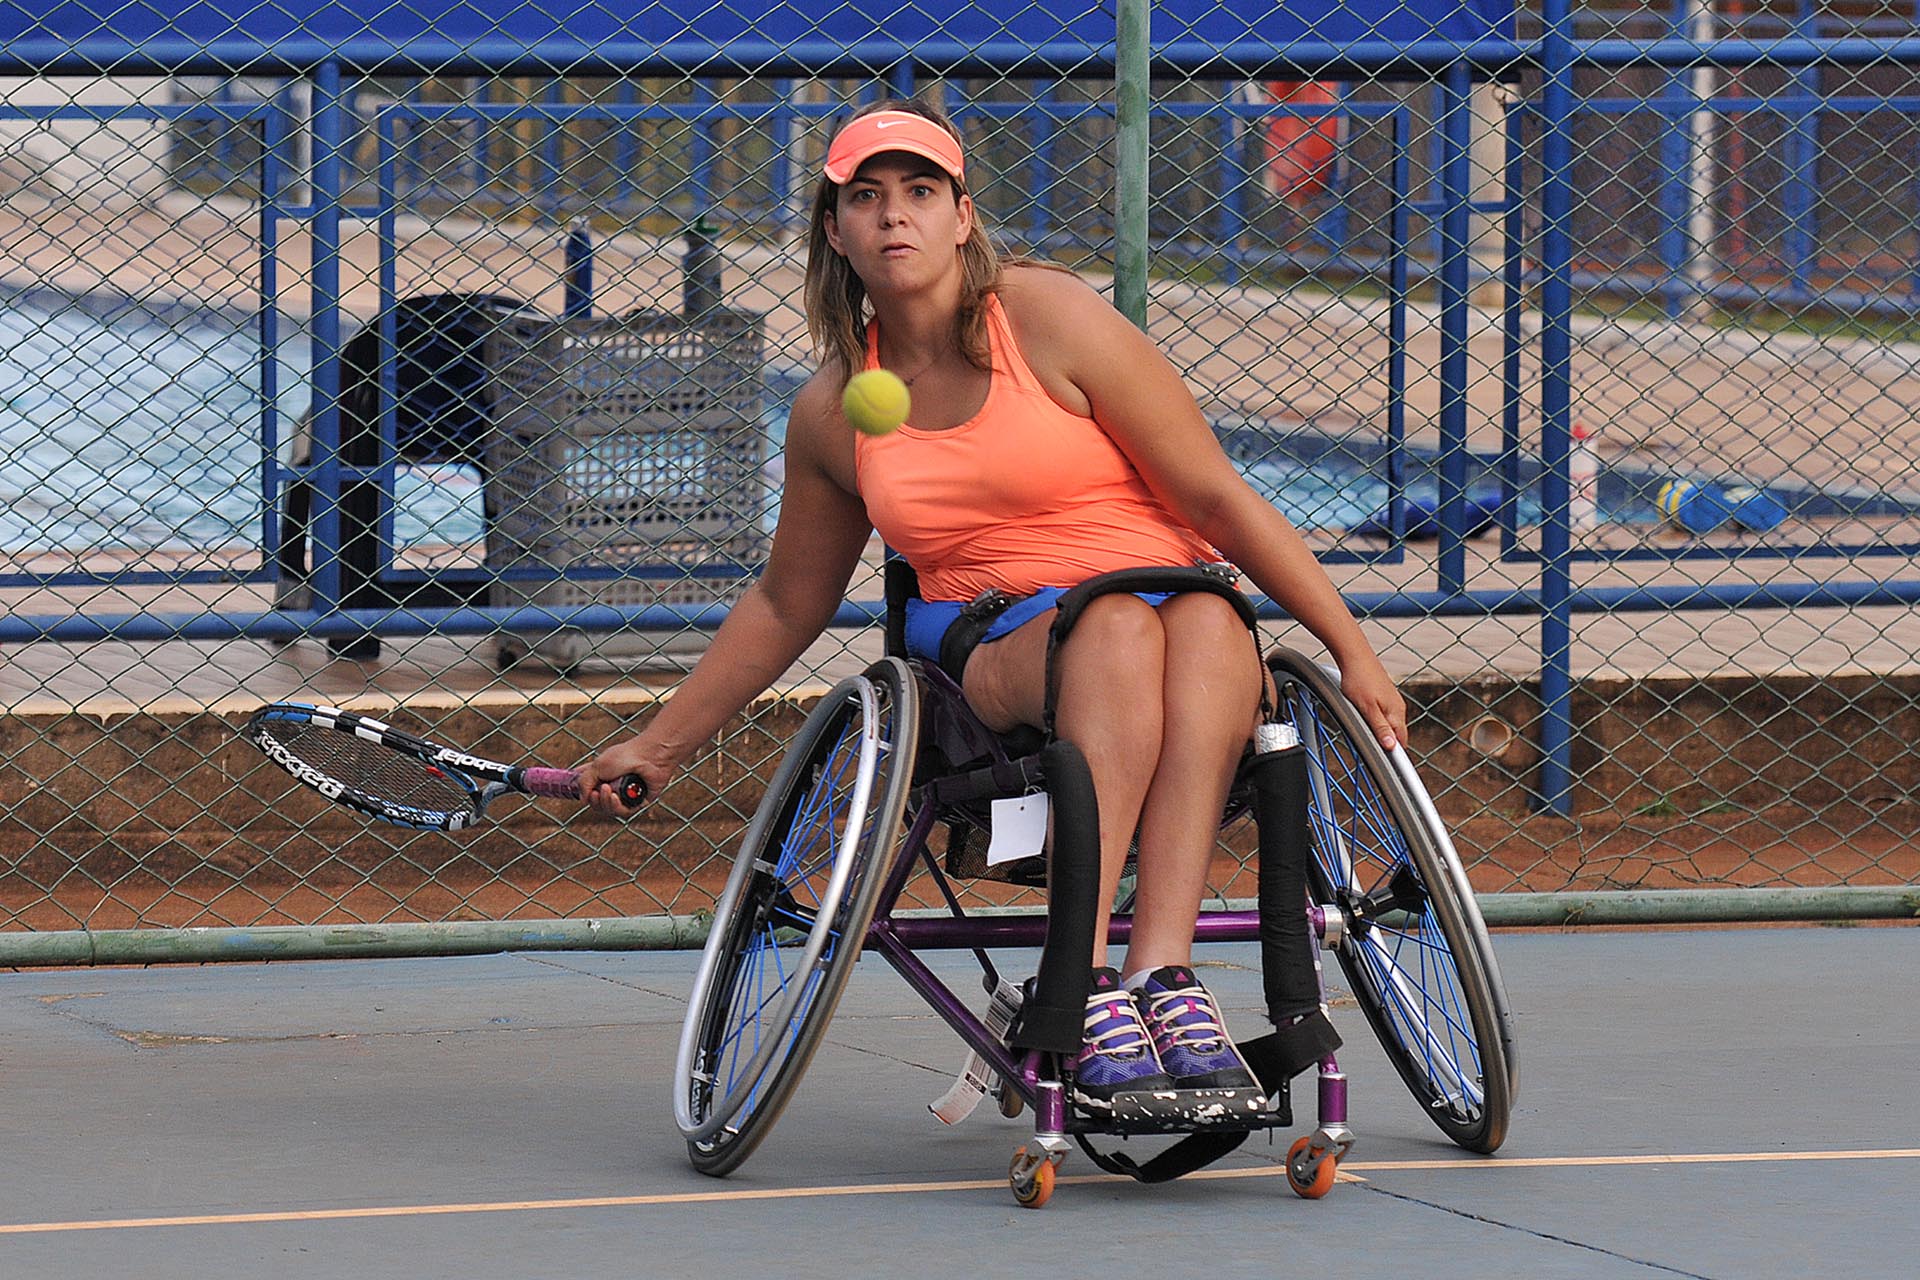 A assistente social Aline de Oliveira Cabral pratica tênis na Cetefe há quatro anos.